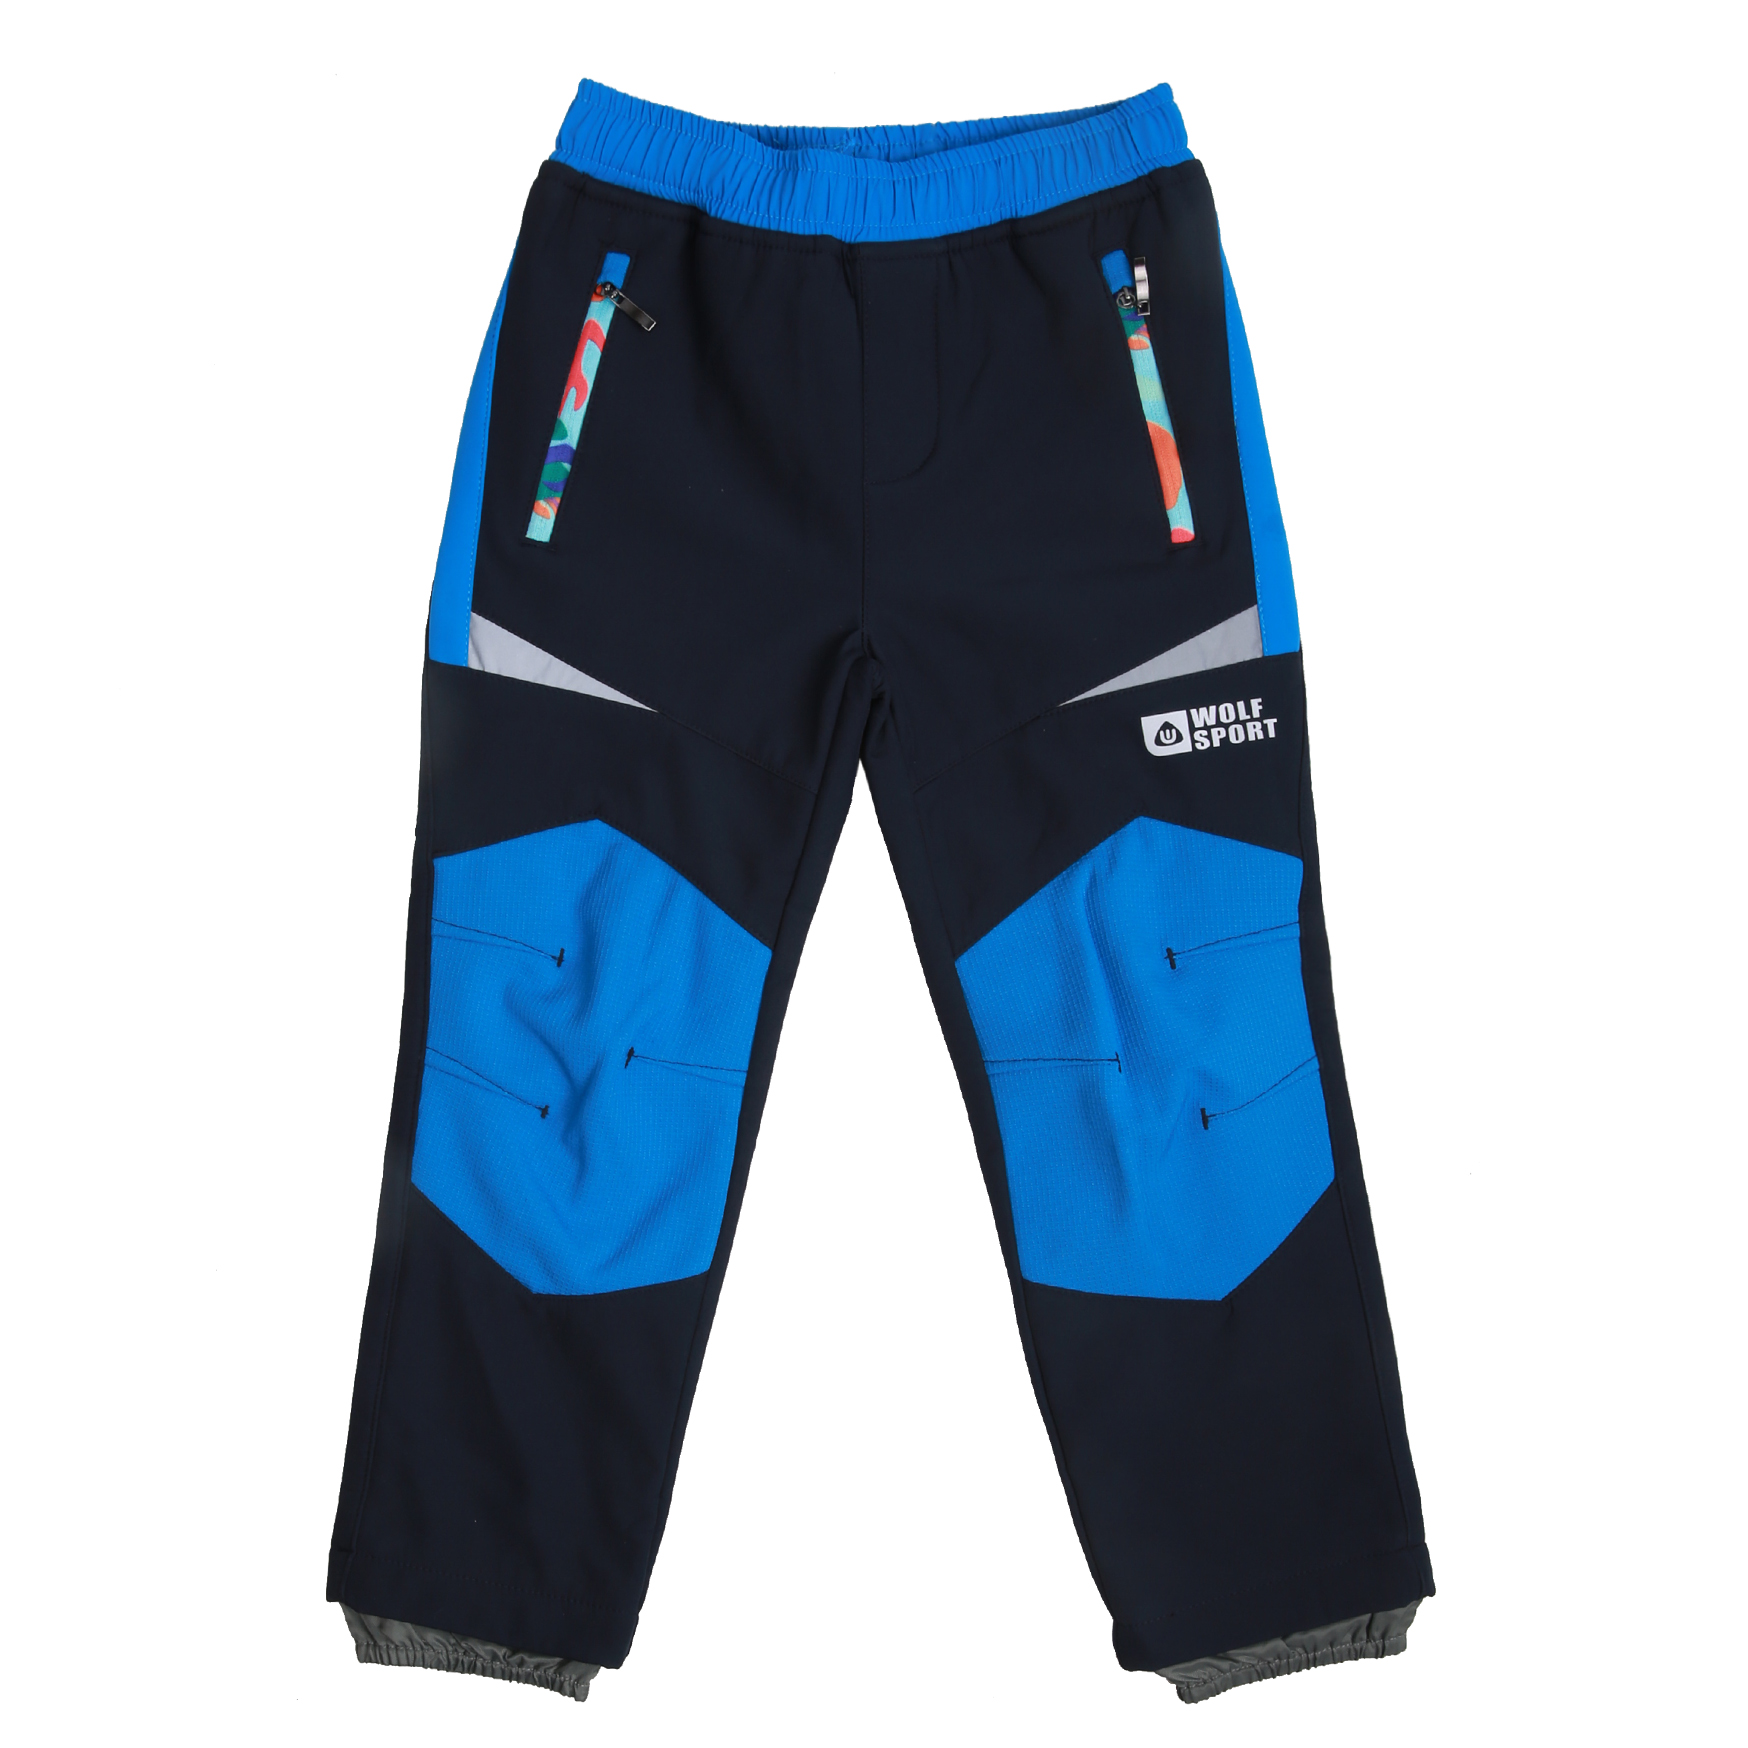 Chlapecké softschellové kalhoty, zateplené - Wolf B2093, tmavě modrá Barva: Modrá tmavě, Velikost: 86